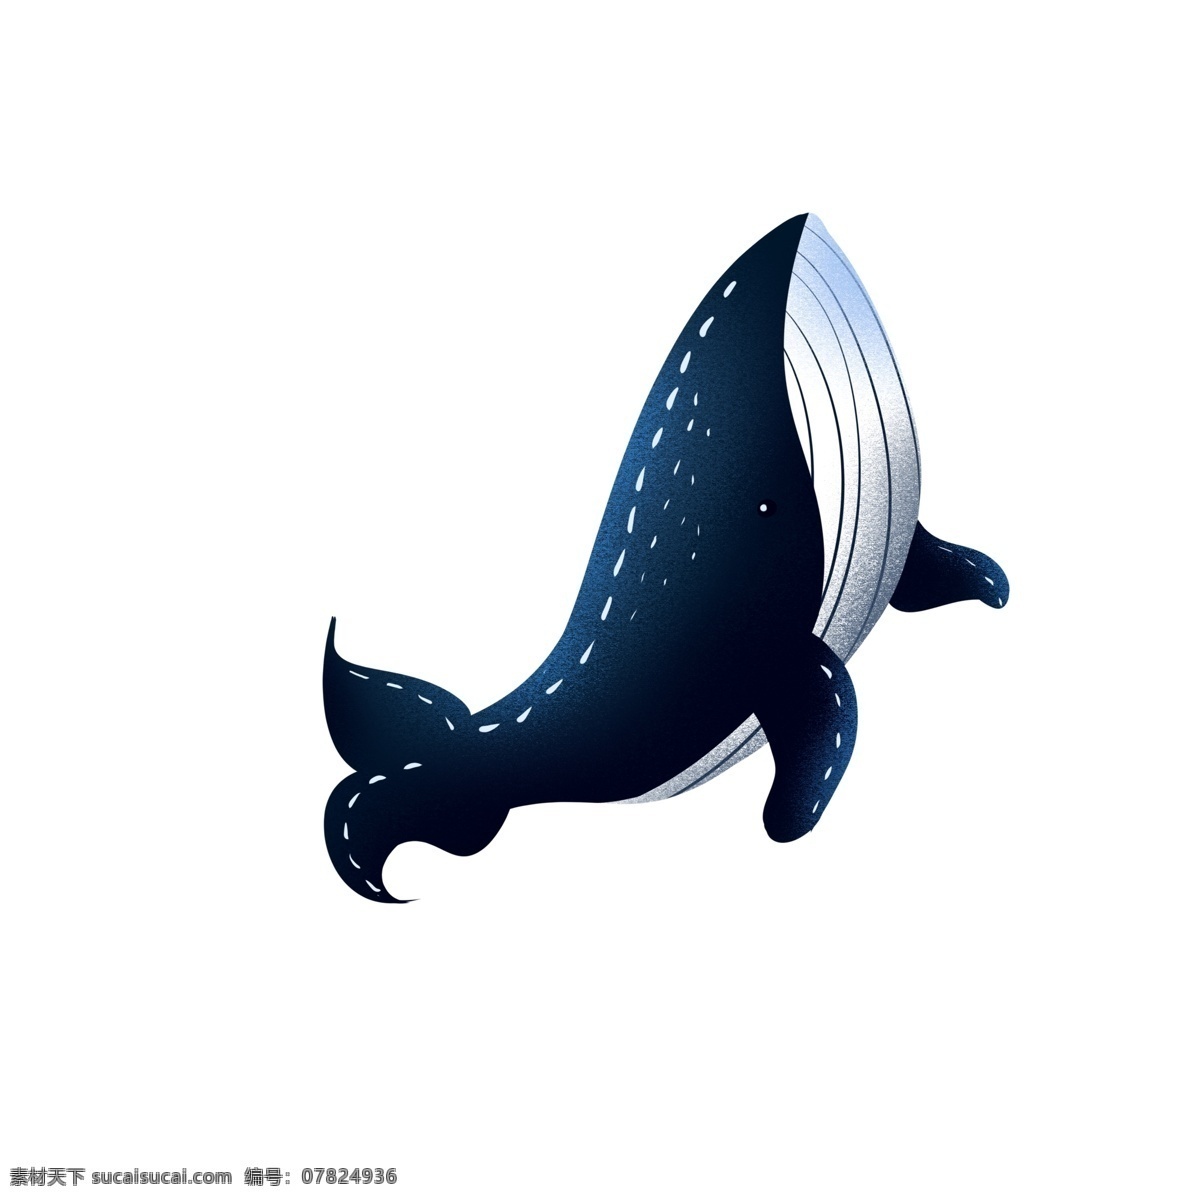 复古 肌理 手绘 蓝鲸 元素 卡通 可爱 复古肌理 动物 海洋生物 蓝鲸设计